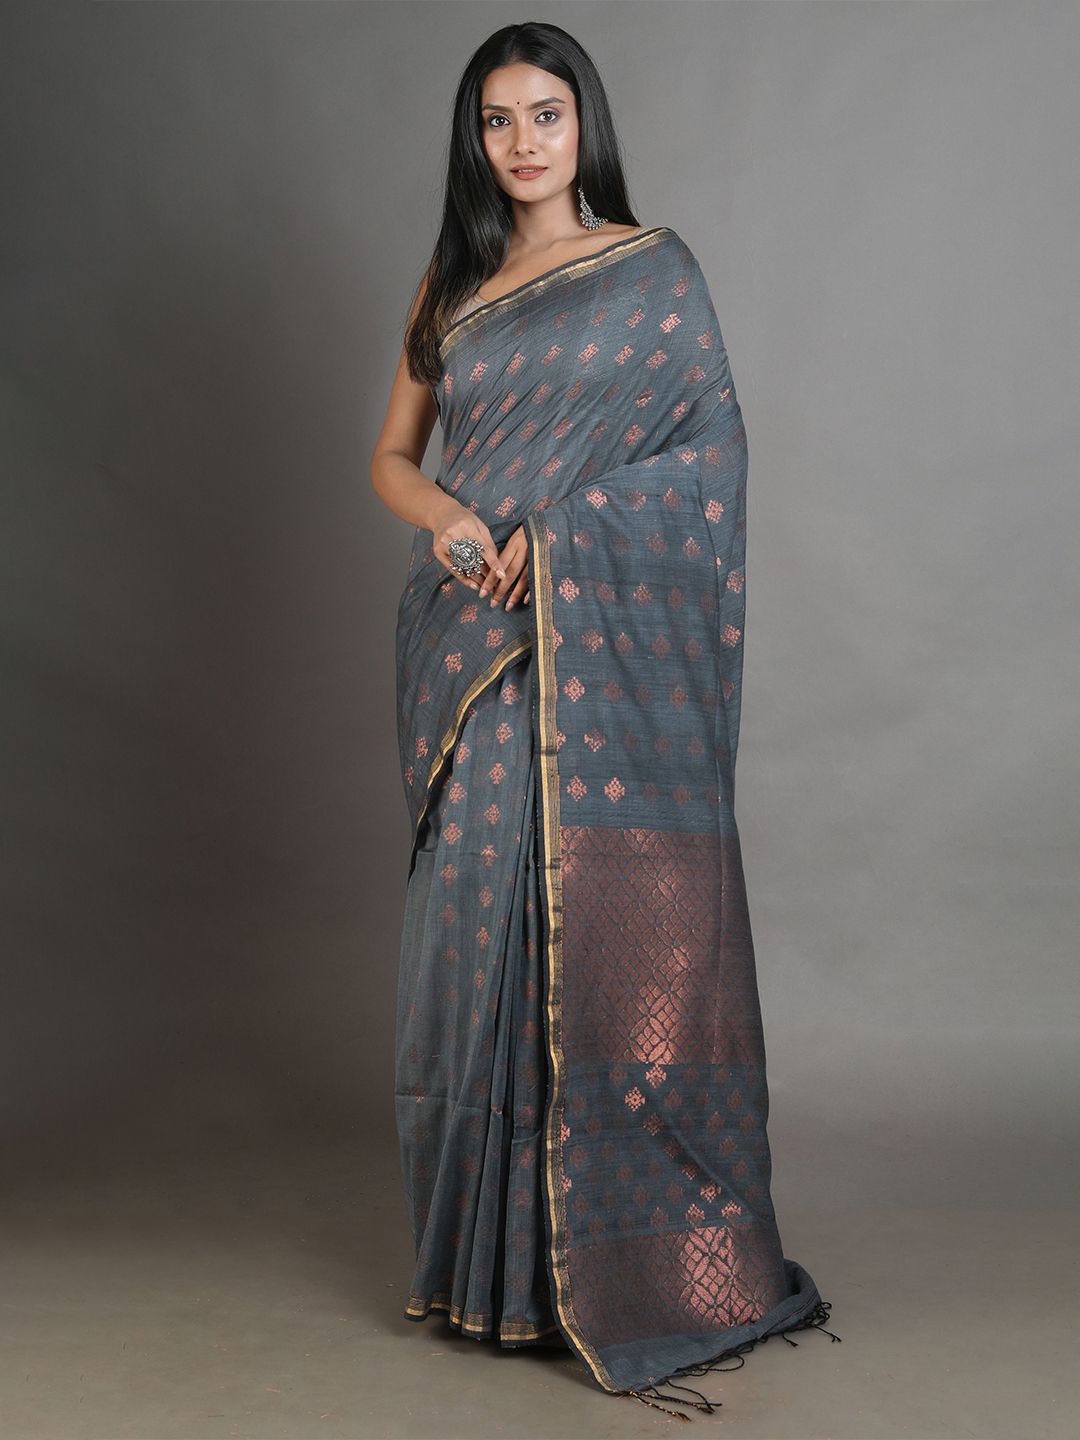 Arhi Grey & Copper Woven Design Zari Pure Linen Saree Price in India